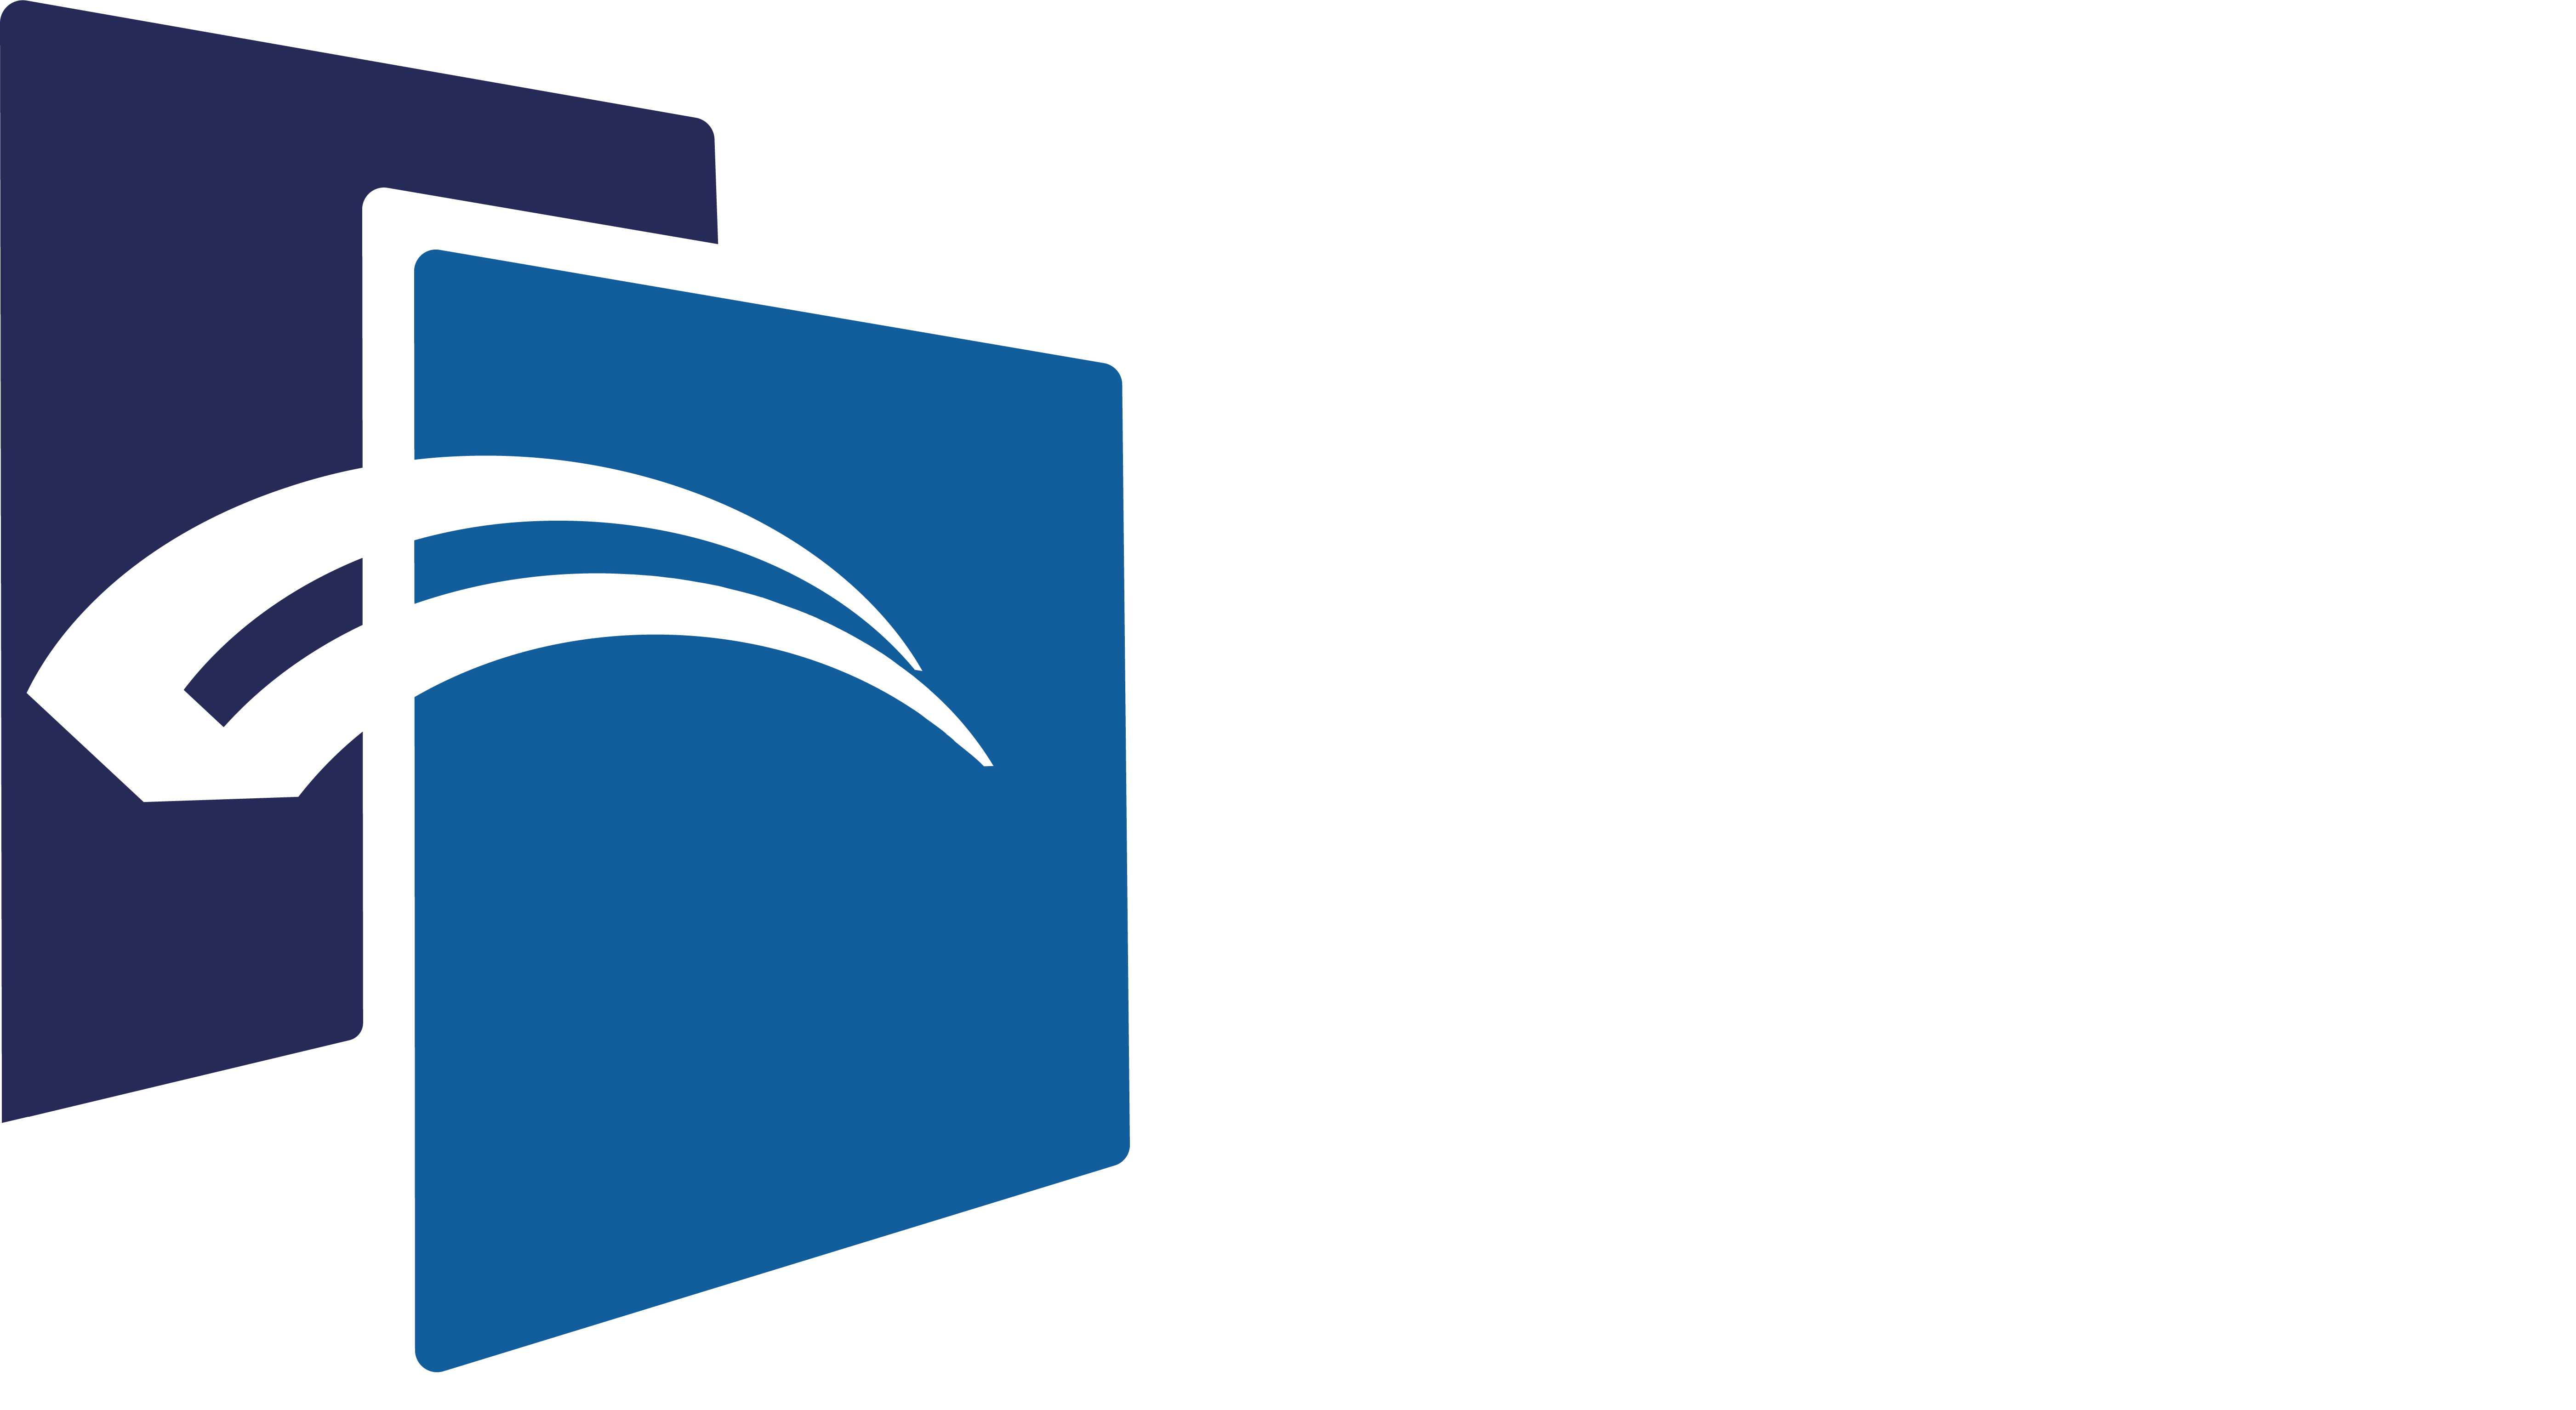 bridge business school centre de formation et de e-learning